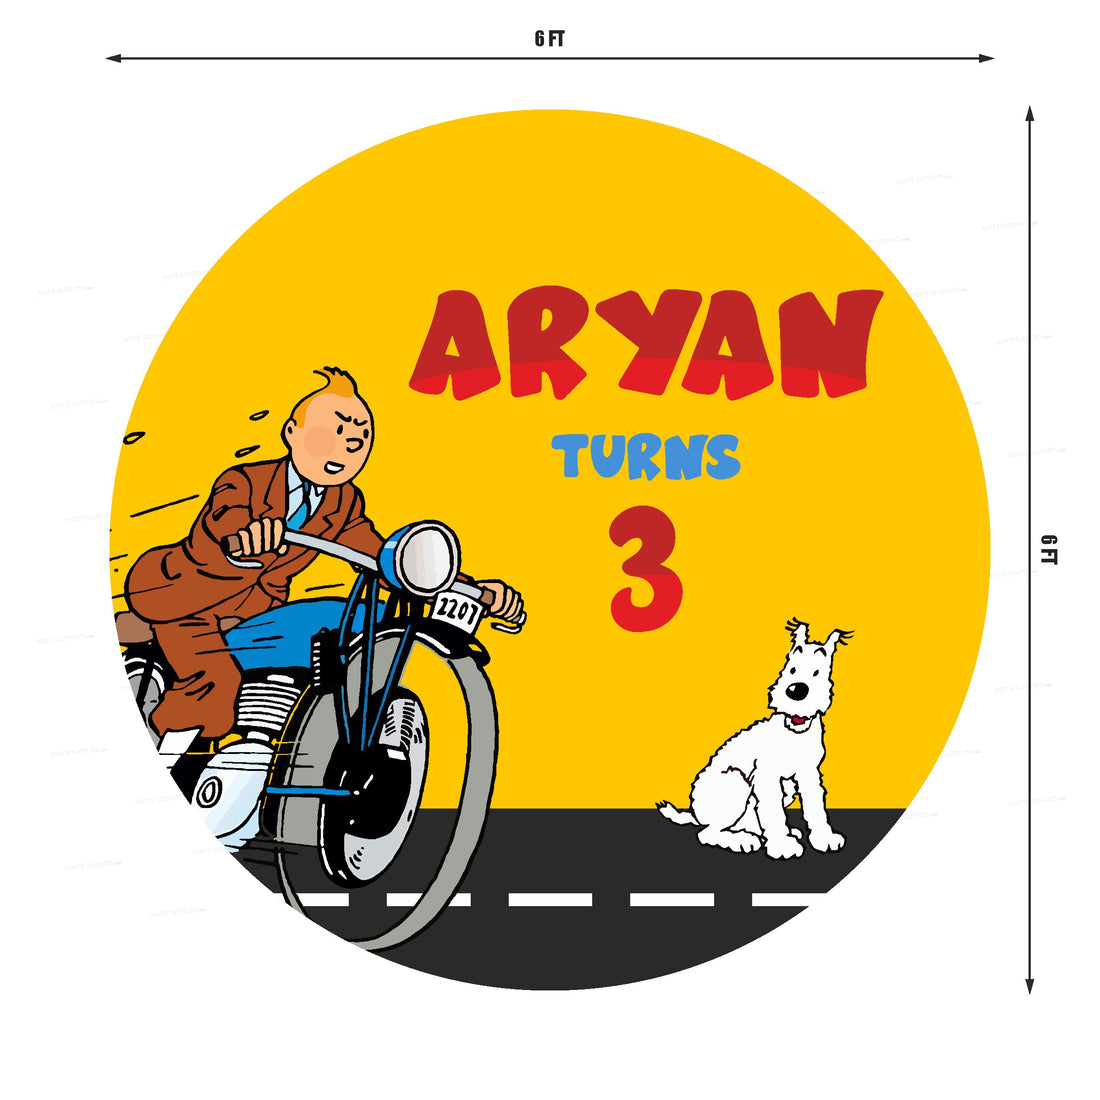 PSI Tintin Theme Personalized Round Backdrop